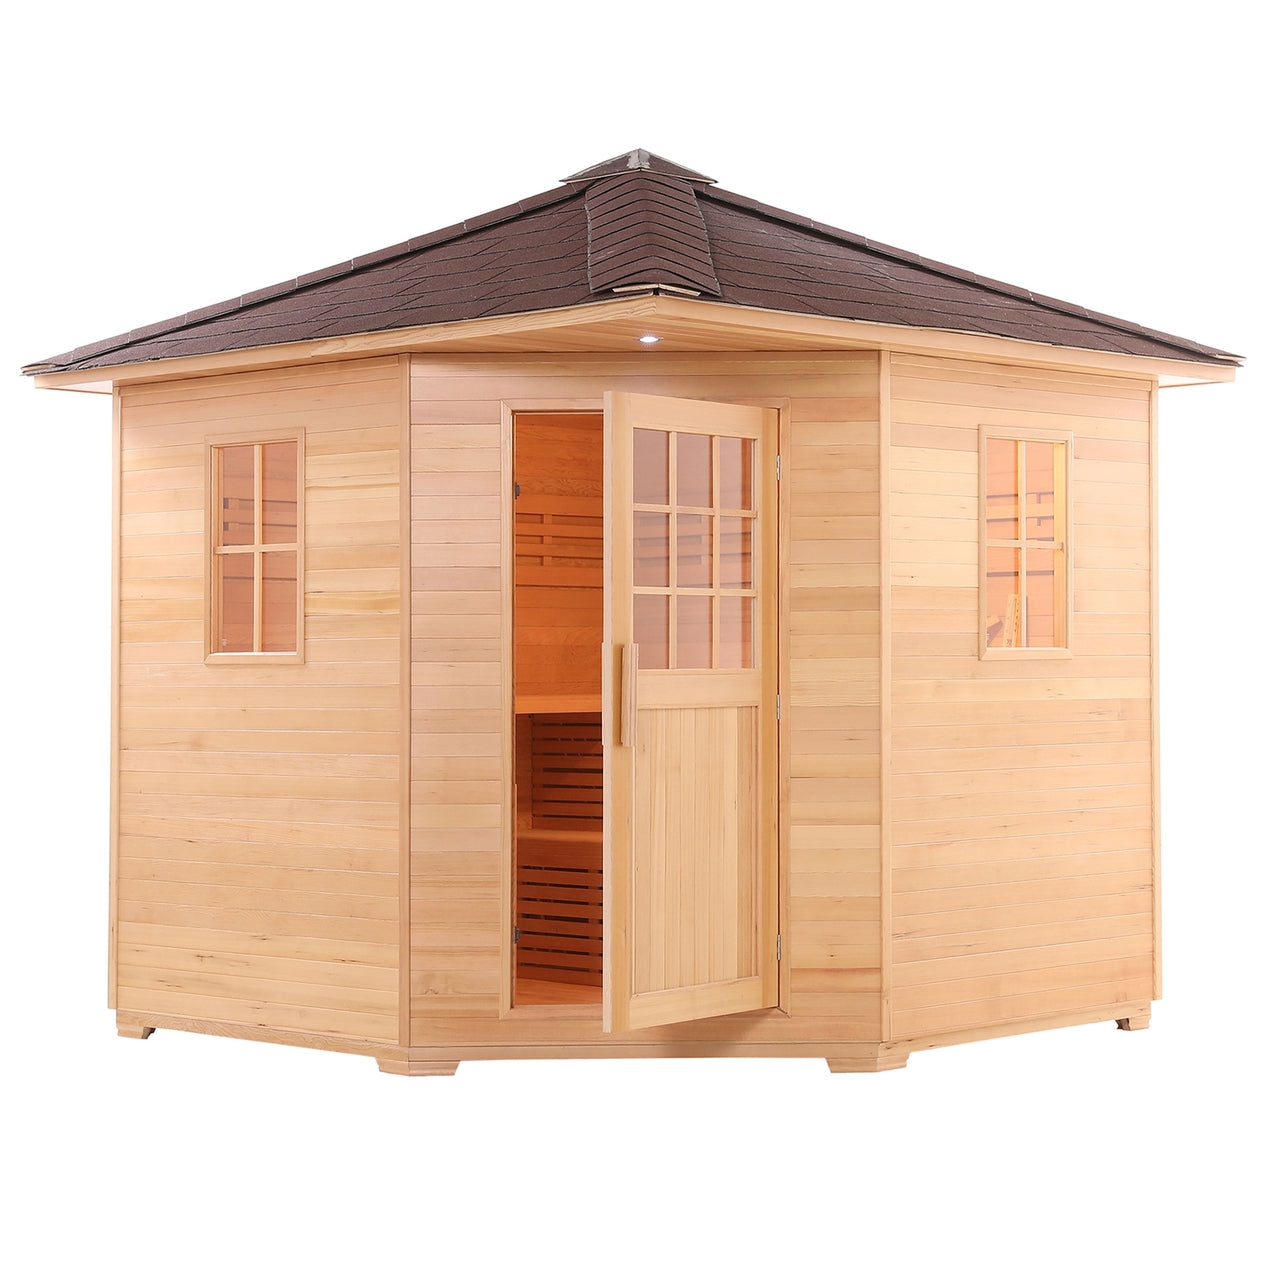 Aleko Canadian Hemlock Wet Dry Outdoor Sauna with Asphalt Roof -8 Person